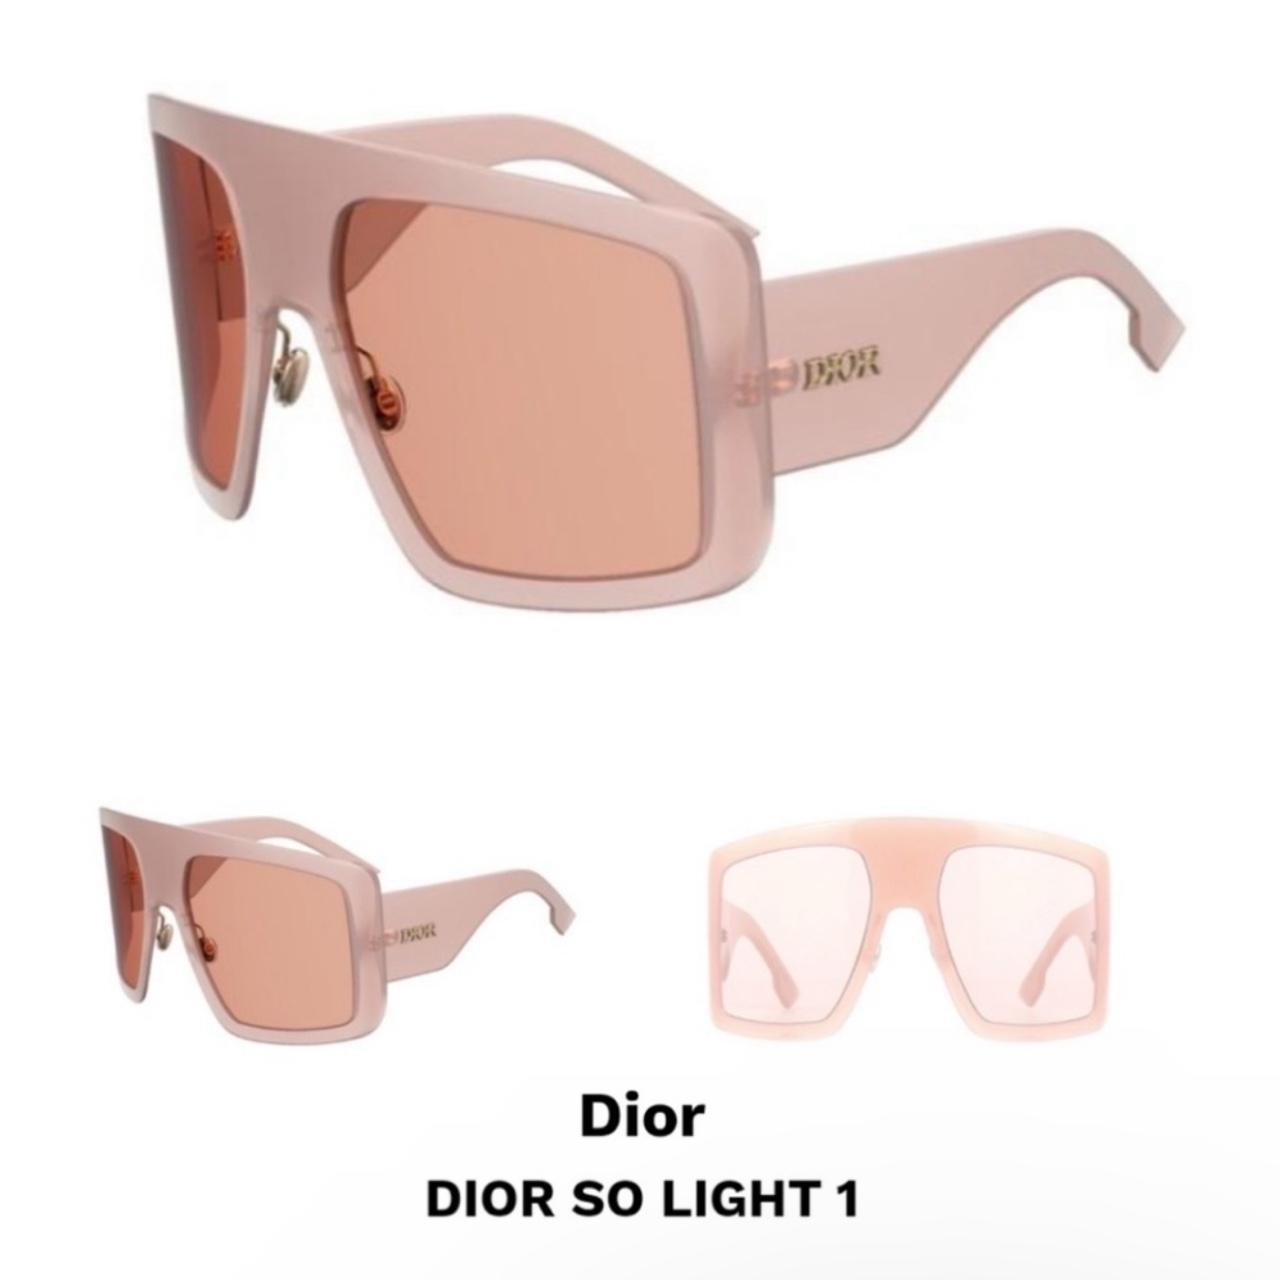 Diorsolight1 sunglasses Dior Black in Other - 42281615